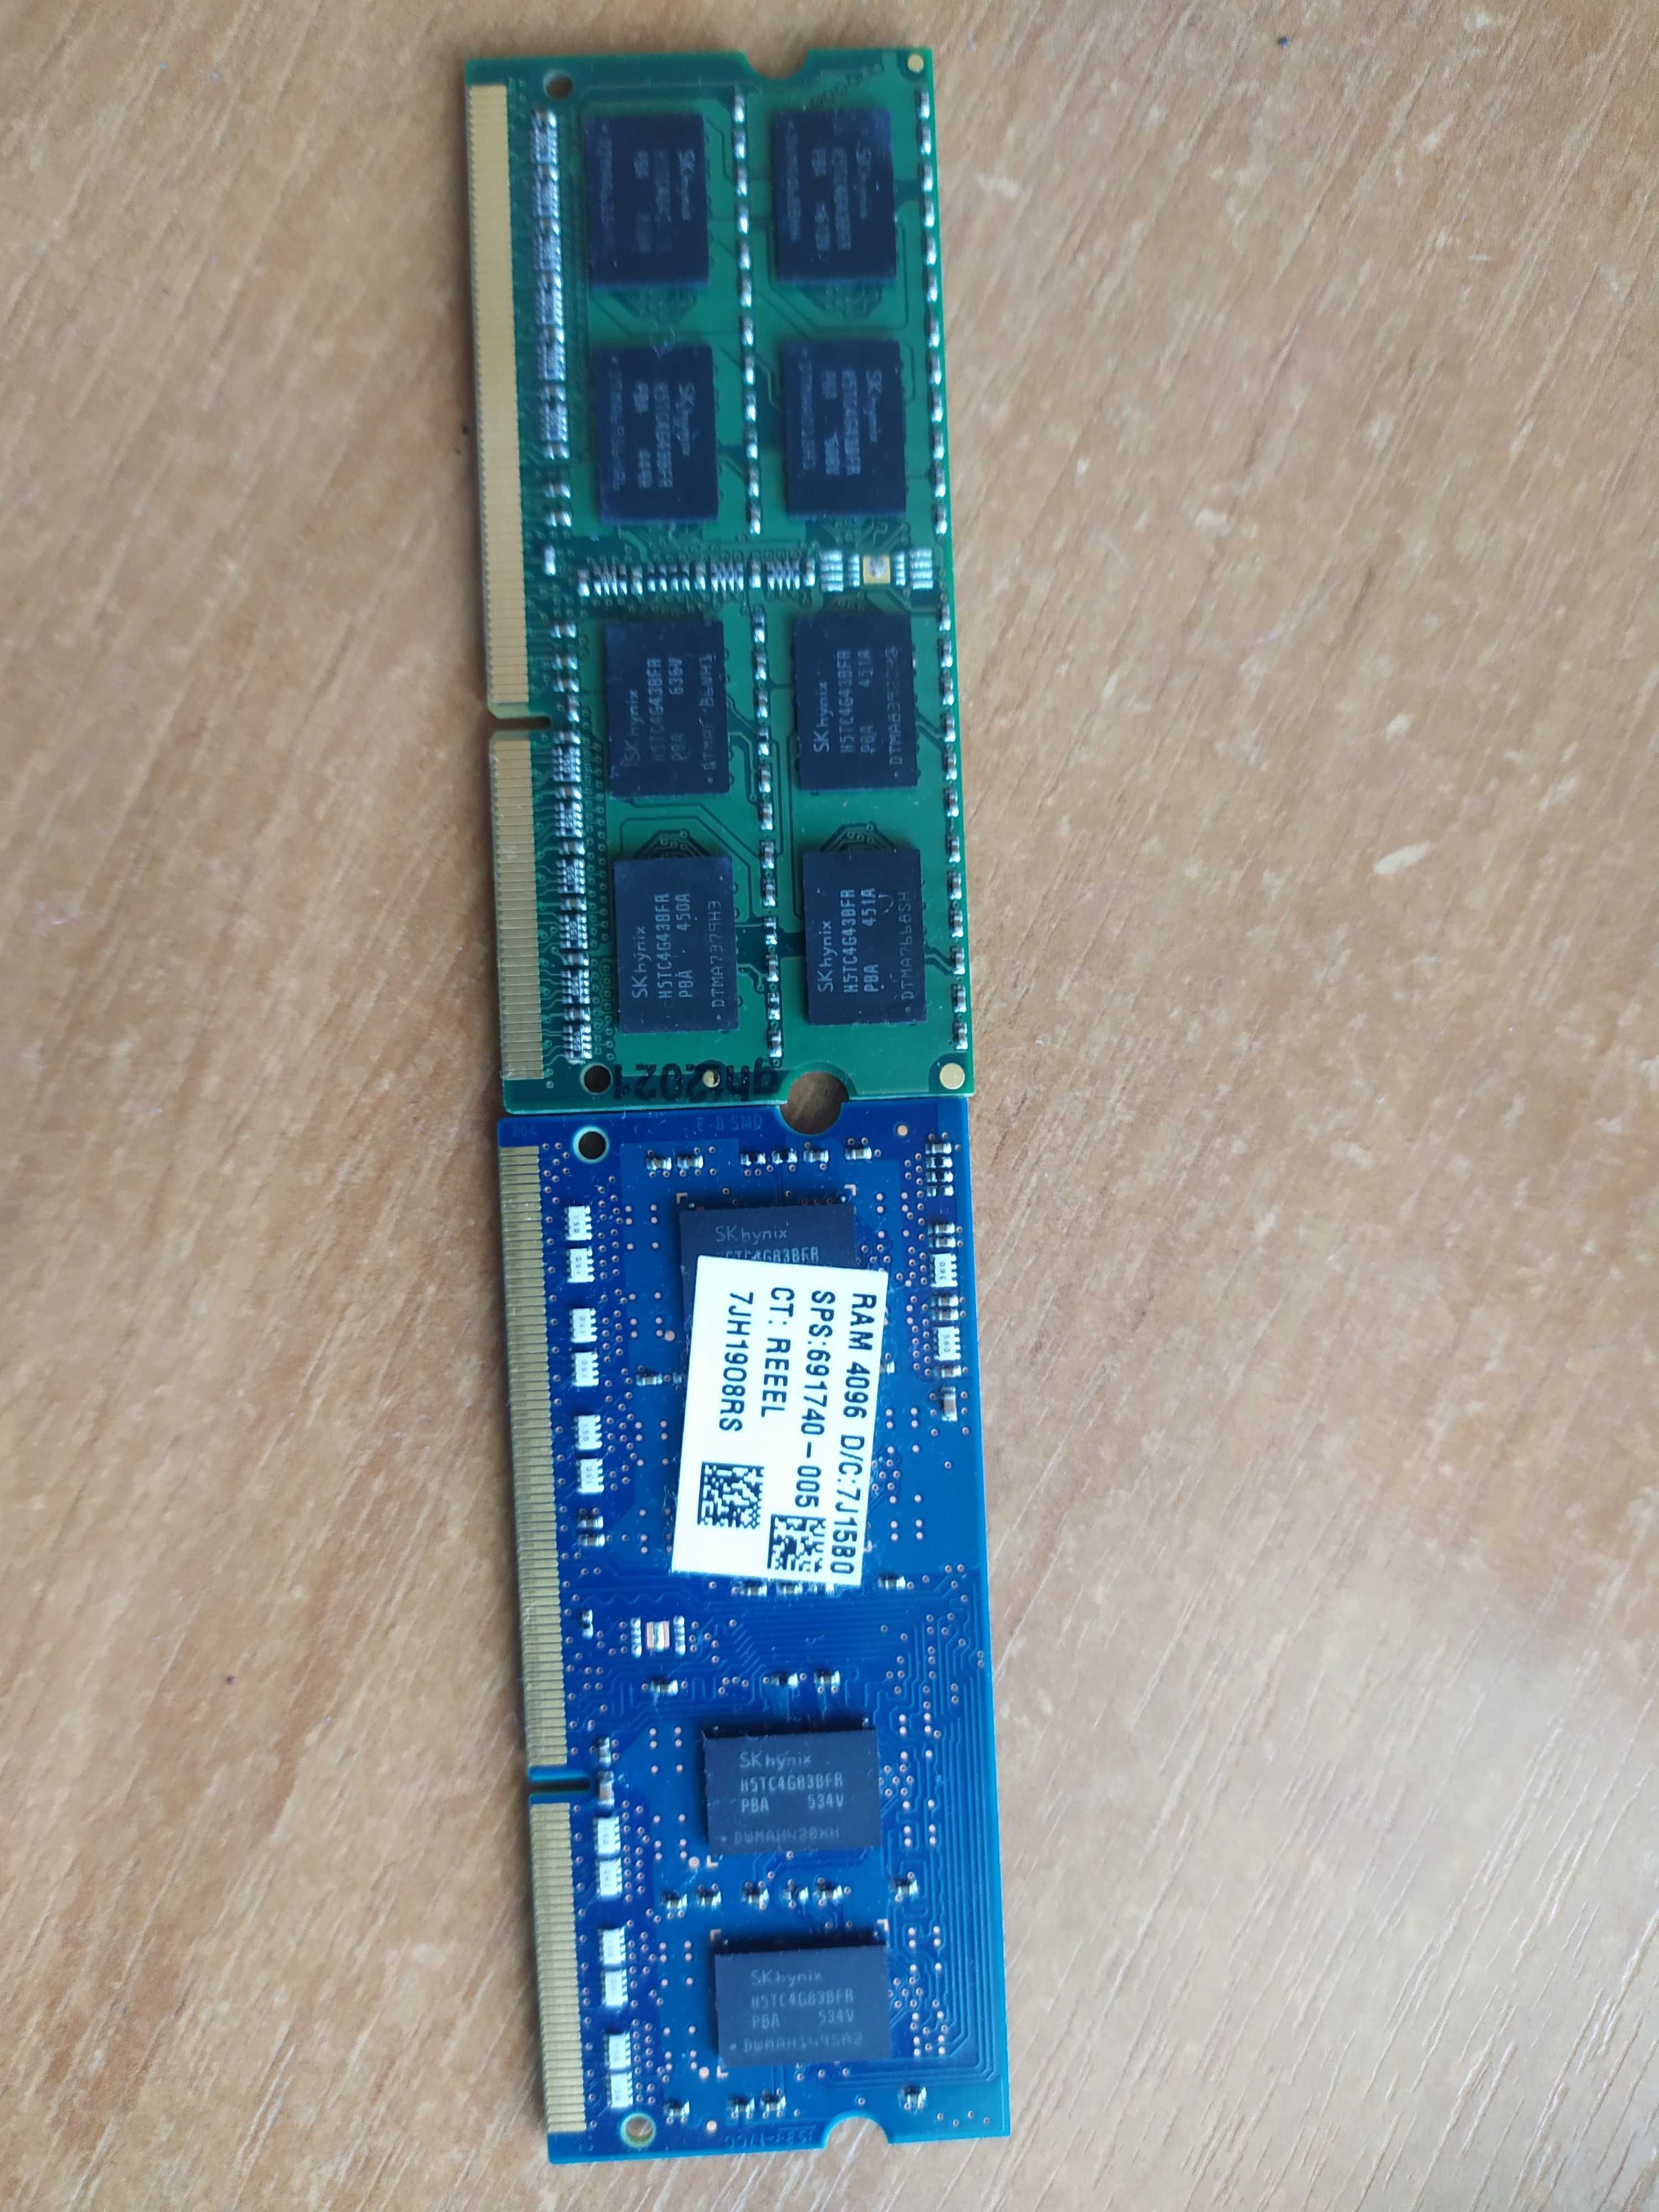 Оперативна пам'ять DDR3 на 8GB та на 4GB, жорсткий диск 1 TB